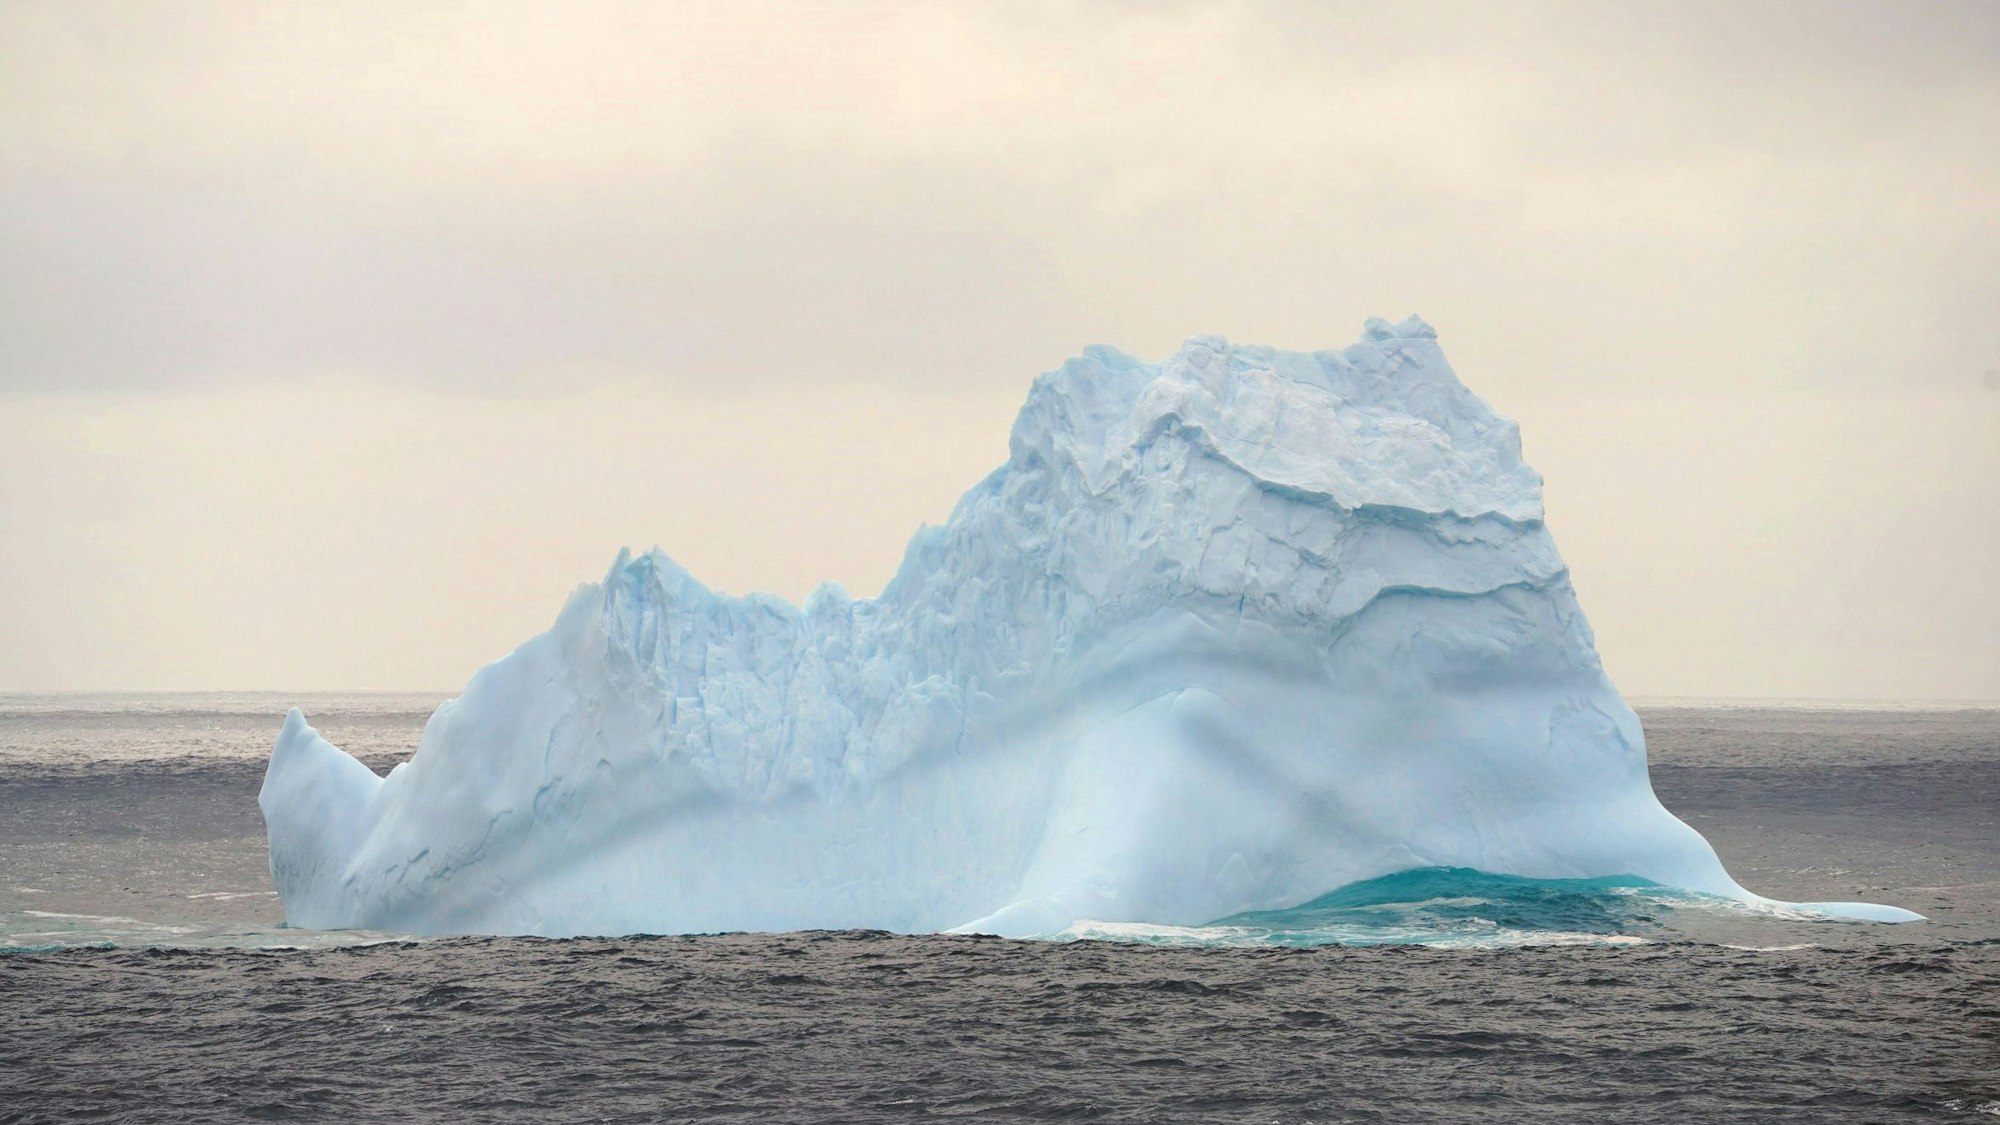 Ein Eisberg im südlichen Ozean, während der chinesische Eisbrecher ´Xuelong 2» vorbeifährt. Außergewöhnliche Wärme in der Antarktis hat Forscher aus Australien Alarm schlagen lassen. Angesichts einer erstmals an der Casey Forschungsstation in der Ostantarktis gemessen Hitzewelle, warnten die Experten vor drastischen Schäden für die antarktischen Lebewesen sowie für die Ökosysteme der Erde. Hitzewellen seien bislang selten in der Antarktis gemessen worden - gewöhnlich bezeichnen Forscher damit eine Aneinanderreihung von mindestens drei Tagen mit extrem hohen Temperaturen.